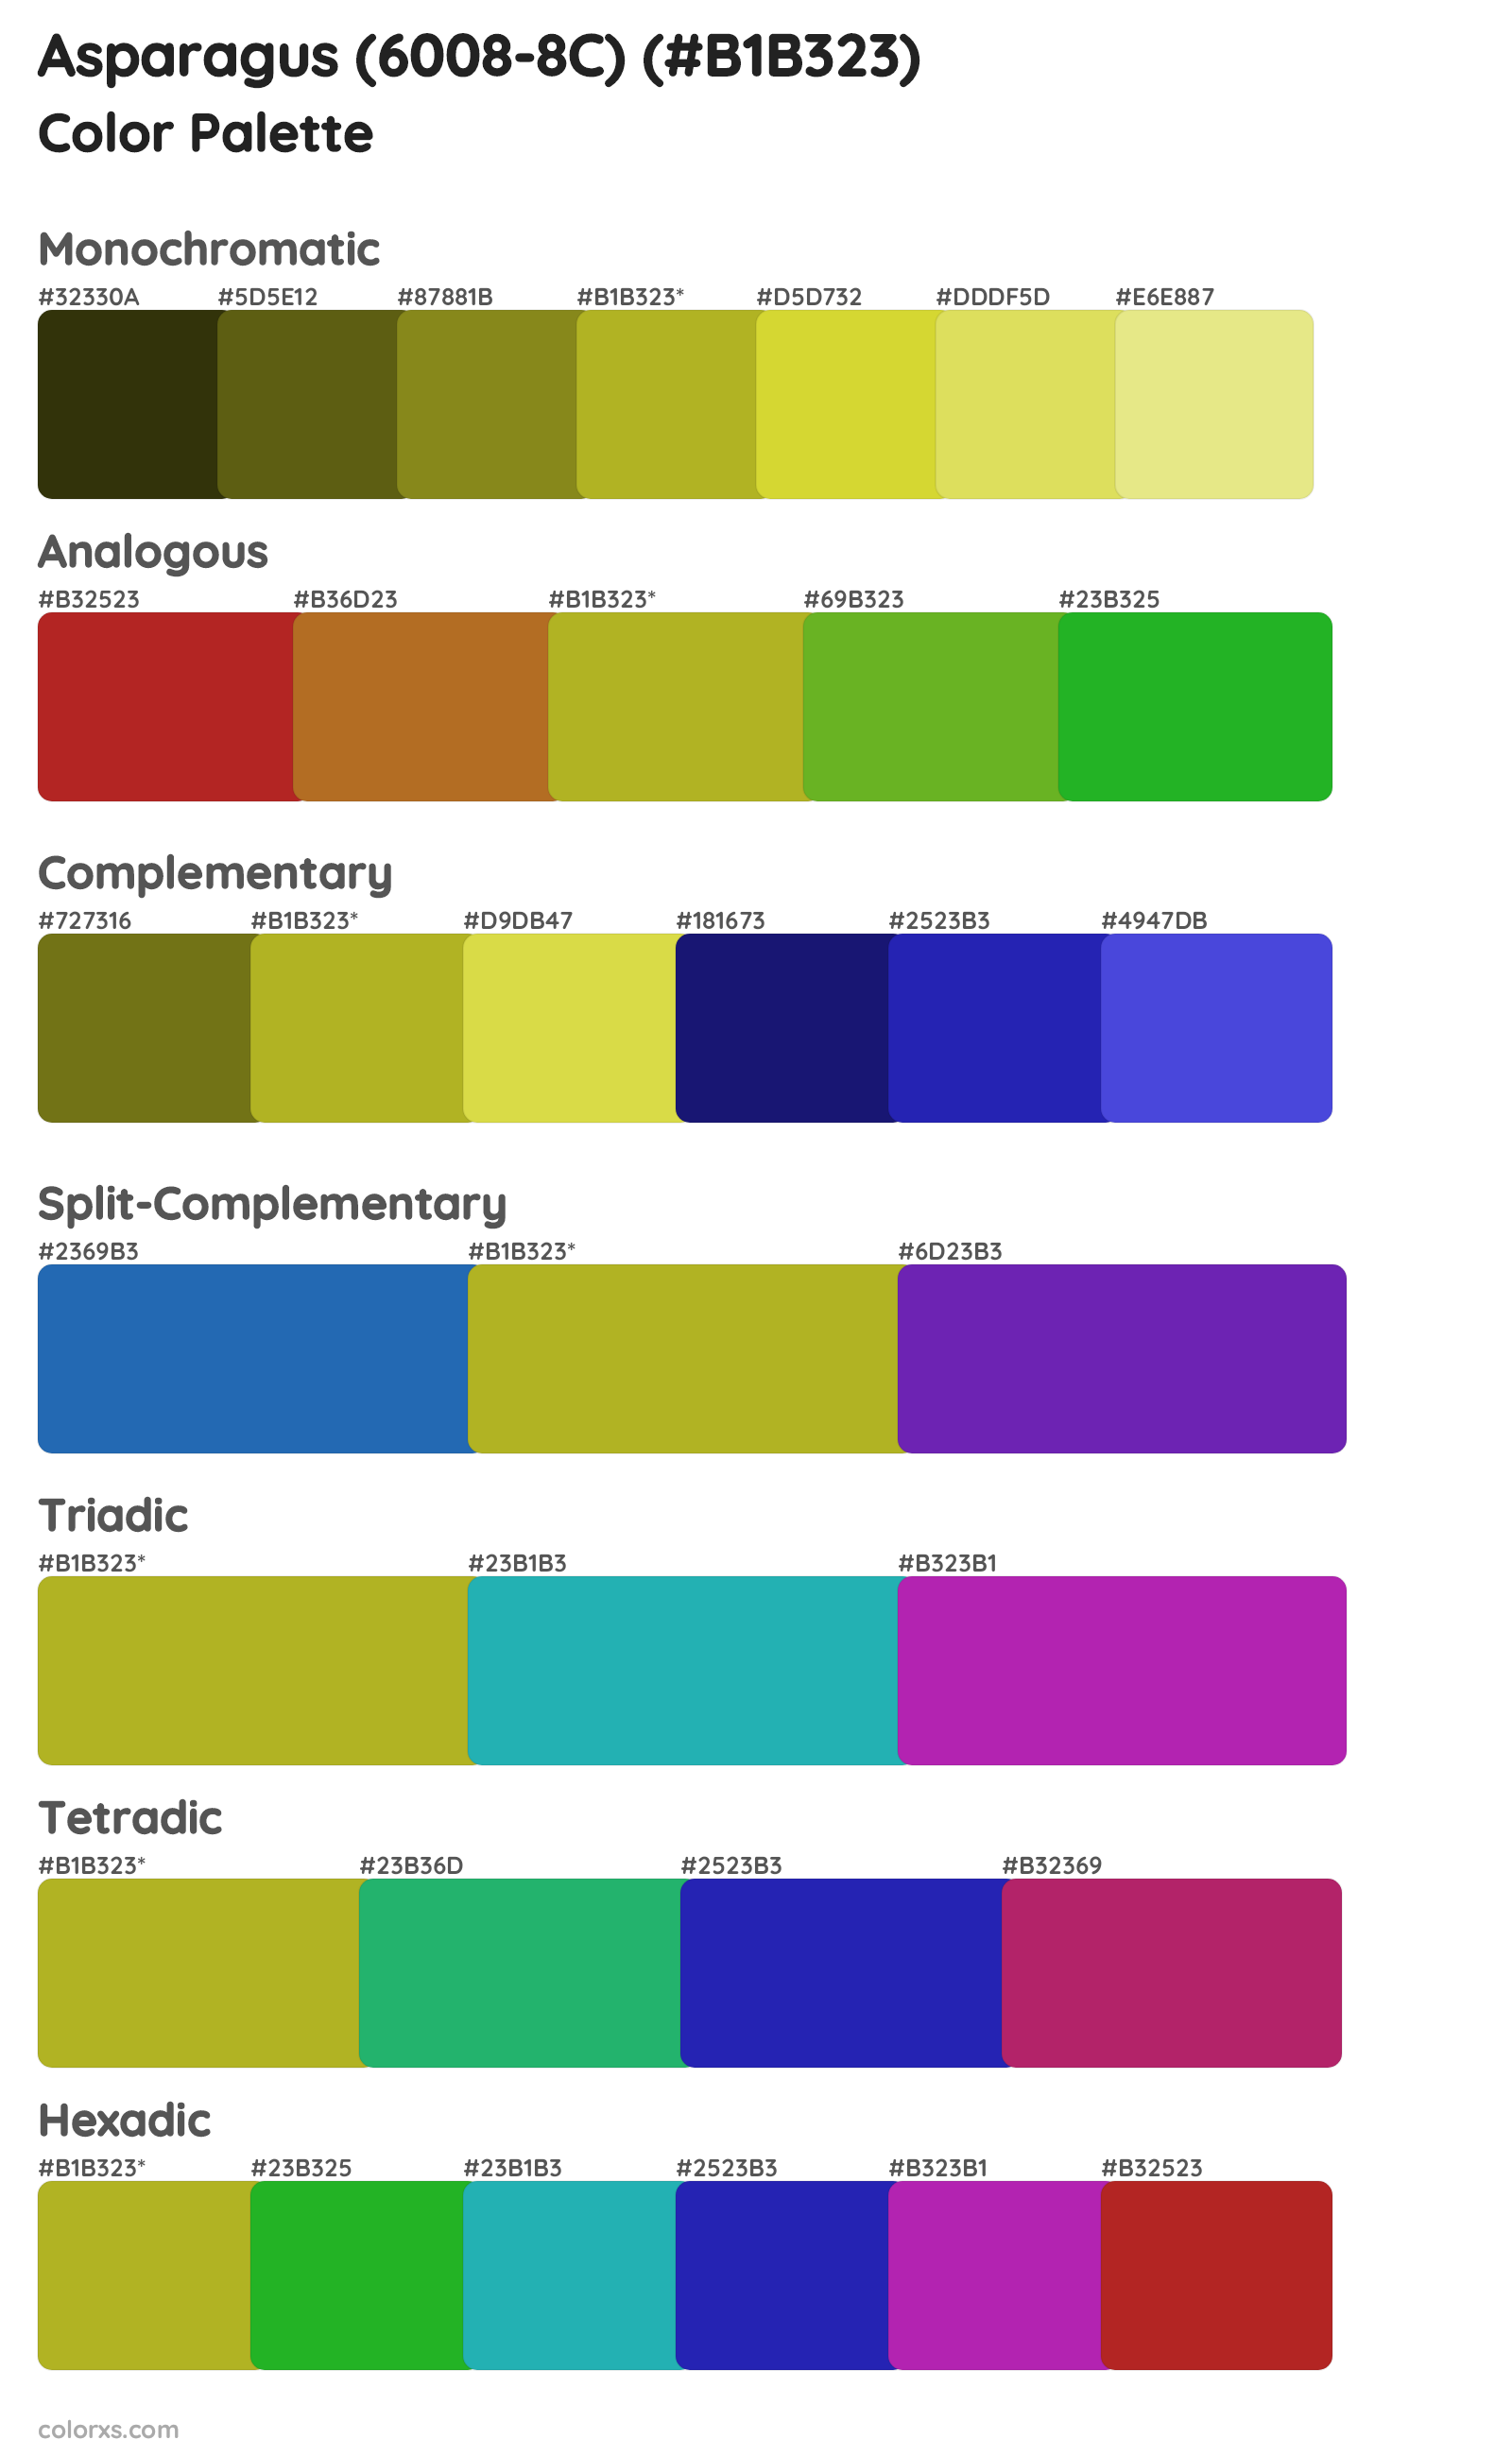 Asparagus (6008-8C) Color Scheme Palettes